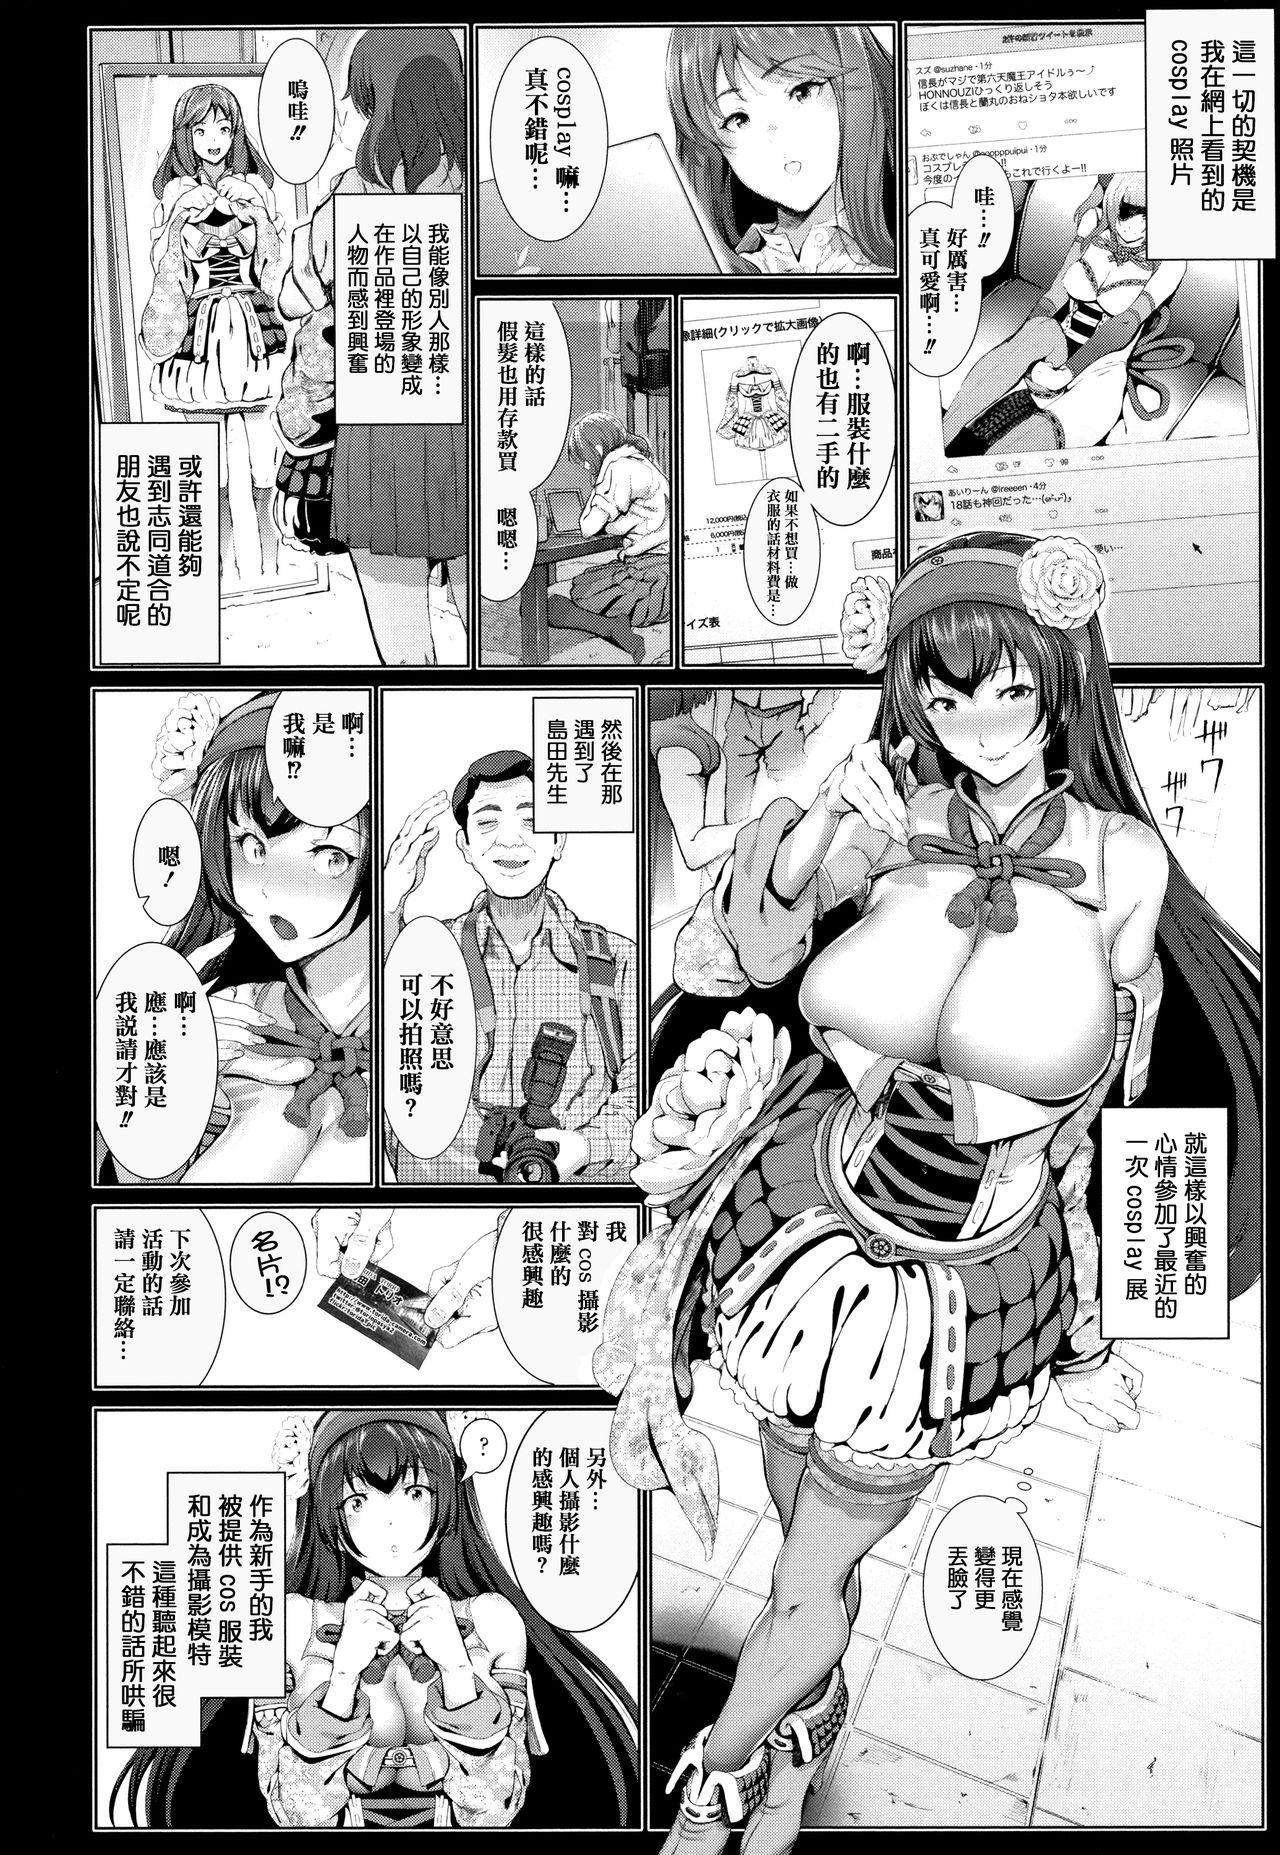 Titten Cos wa Midara na Kamen Shogyouban - Cosplay is a mask Ex Gf - Page 12